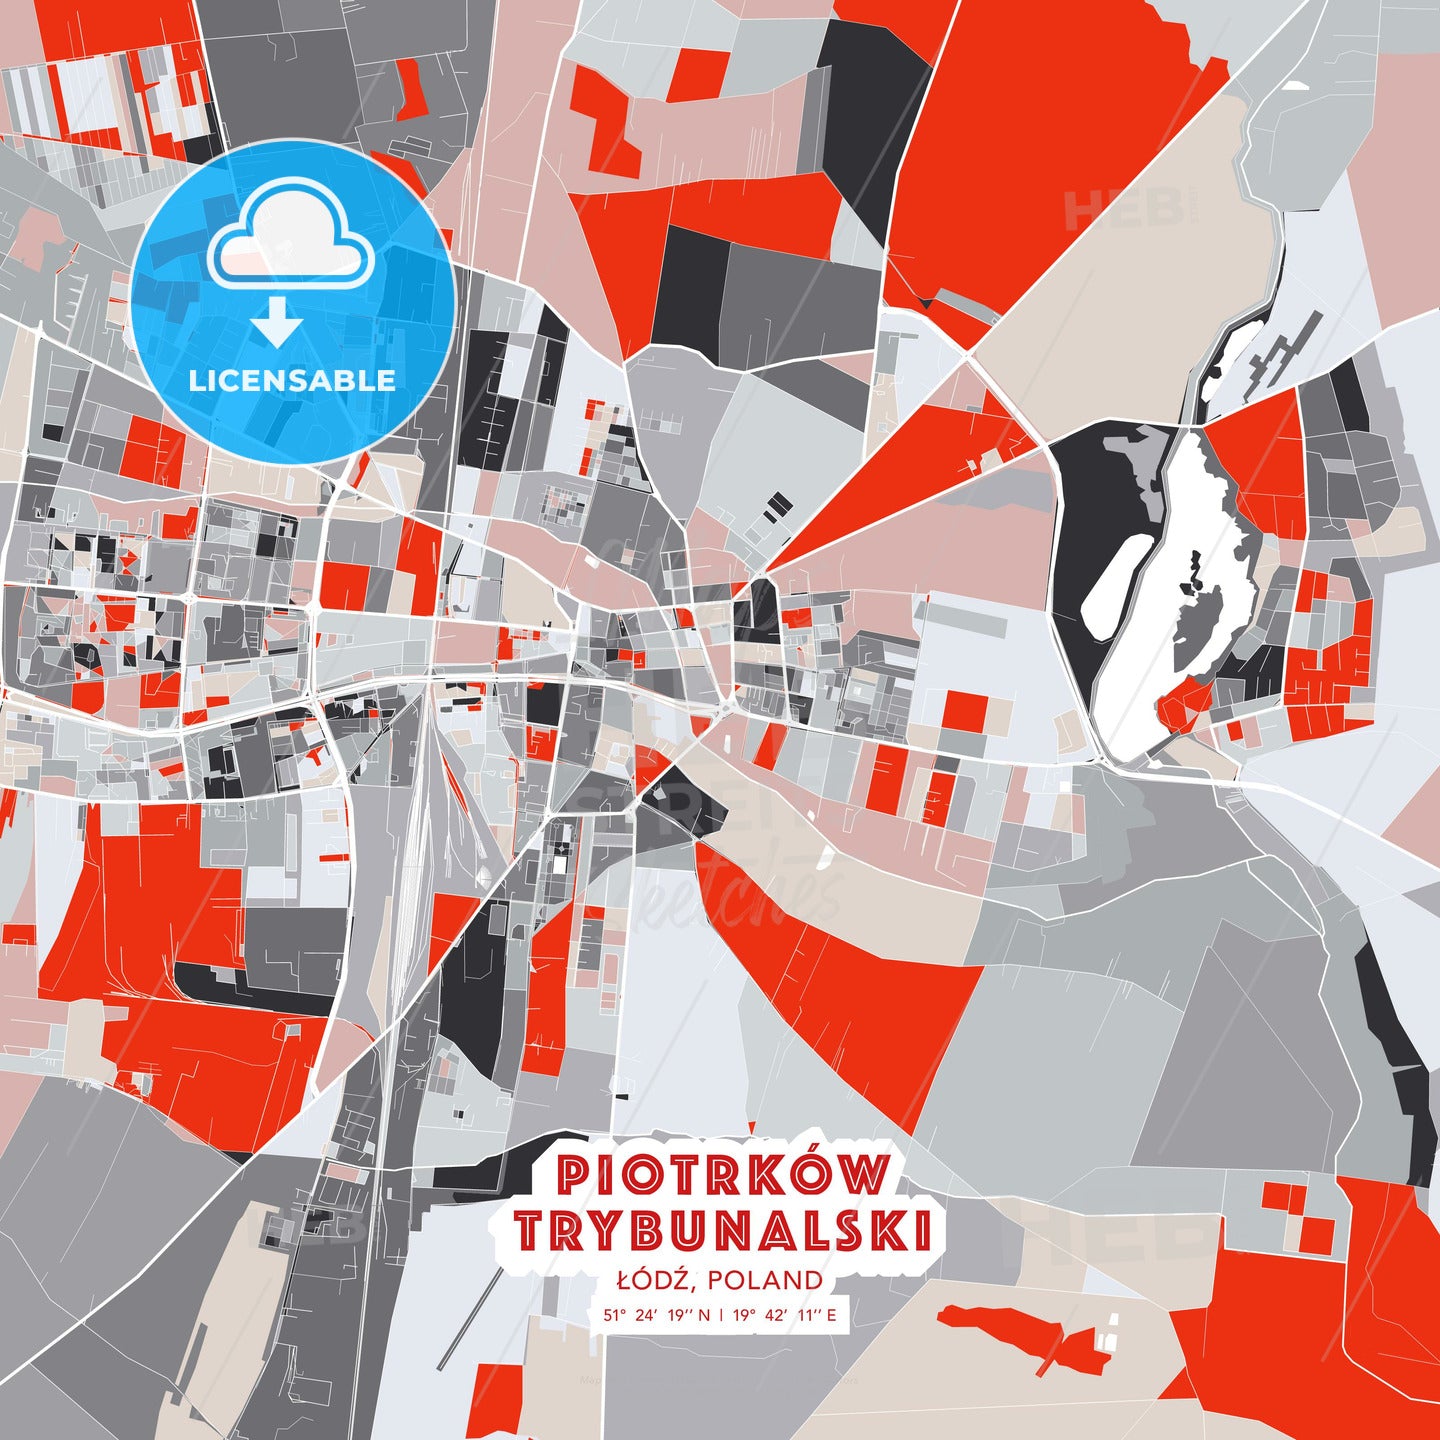 Piotrków Trybunalski, Łódź, Poland, modern map - HEBSTREITS Sketches